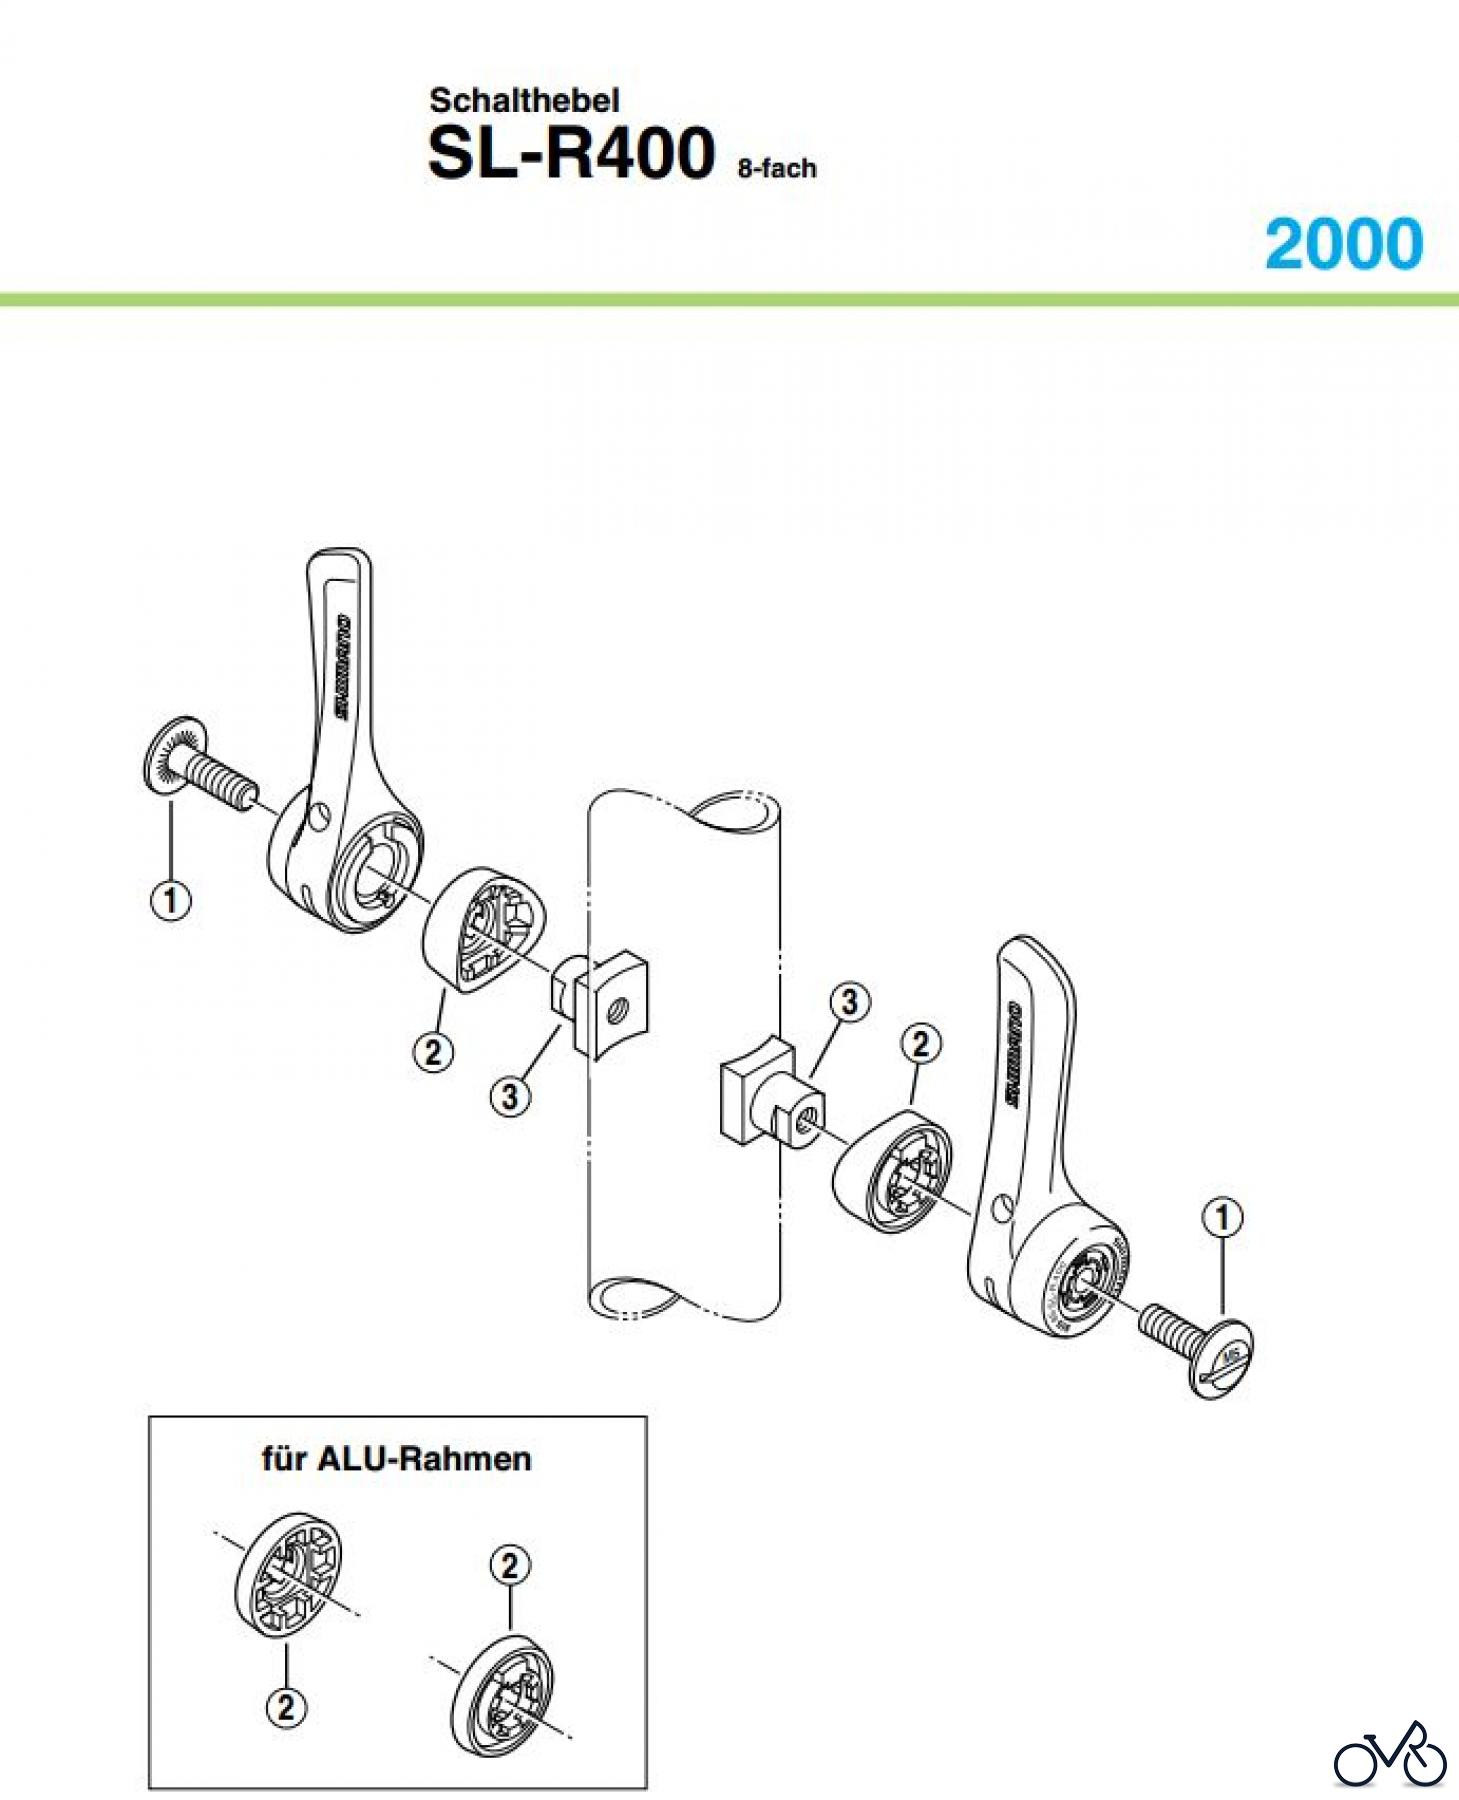  Shimano SL Shift Lever - Schalthebel SL-R400, 2000 Schalthebel